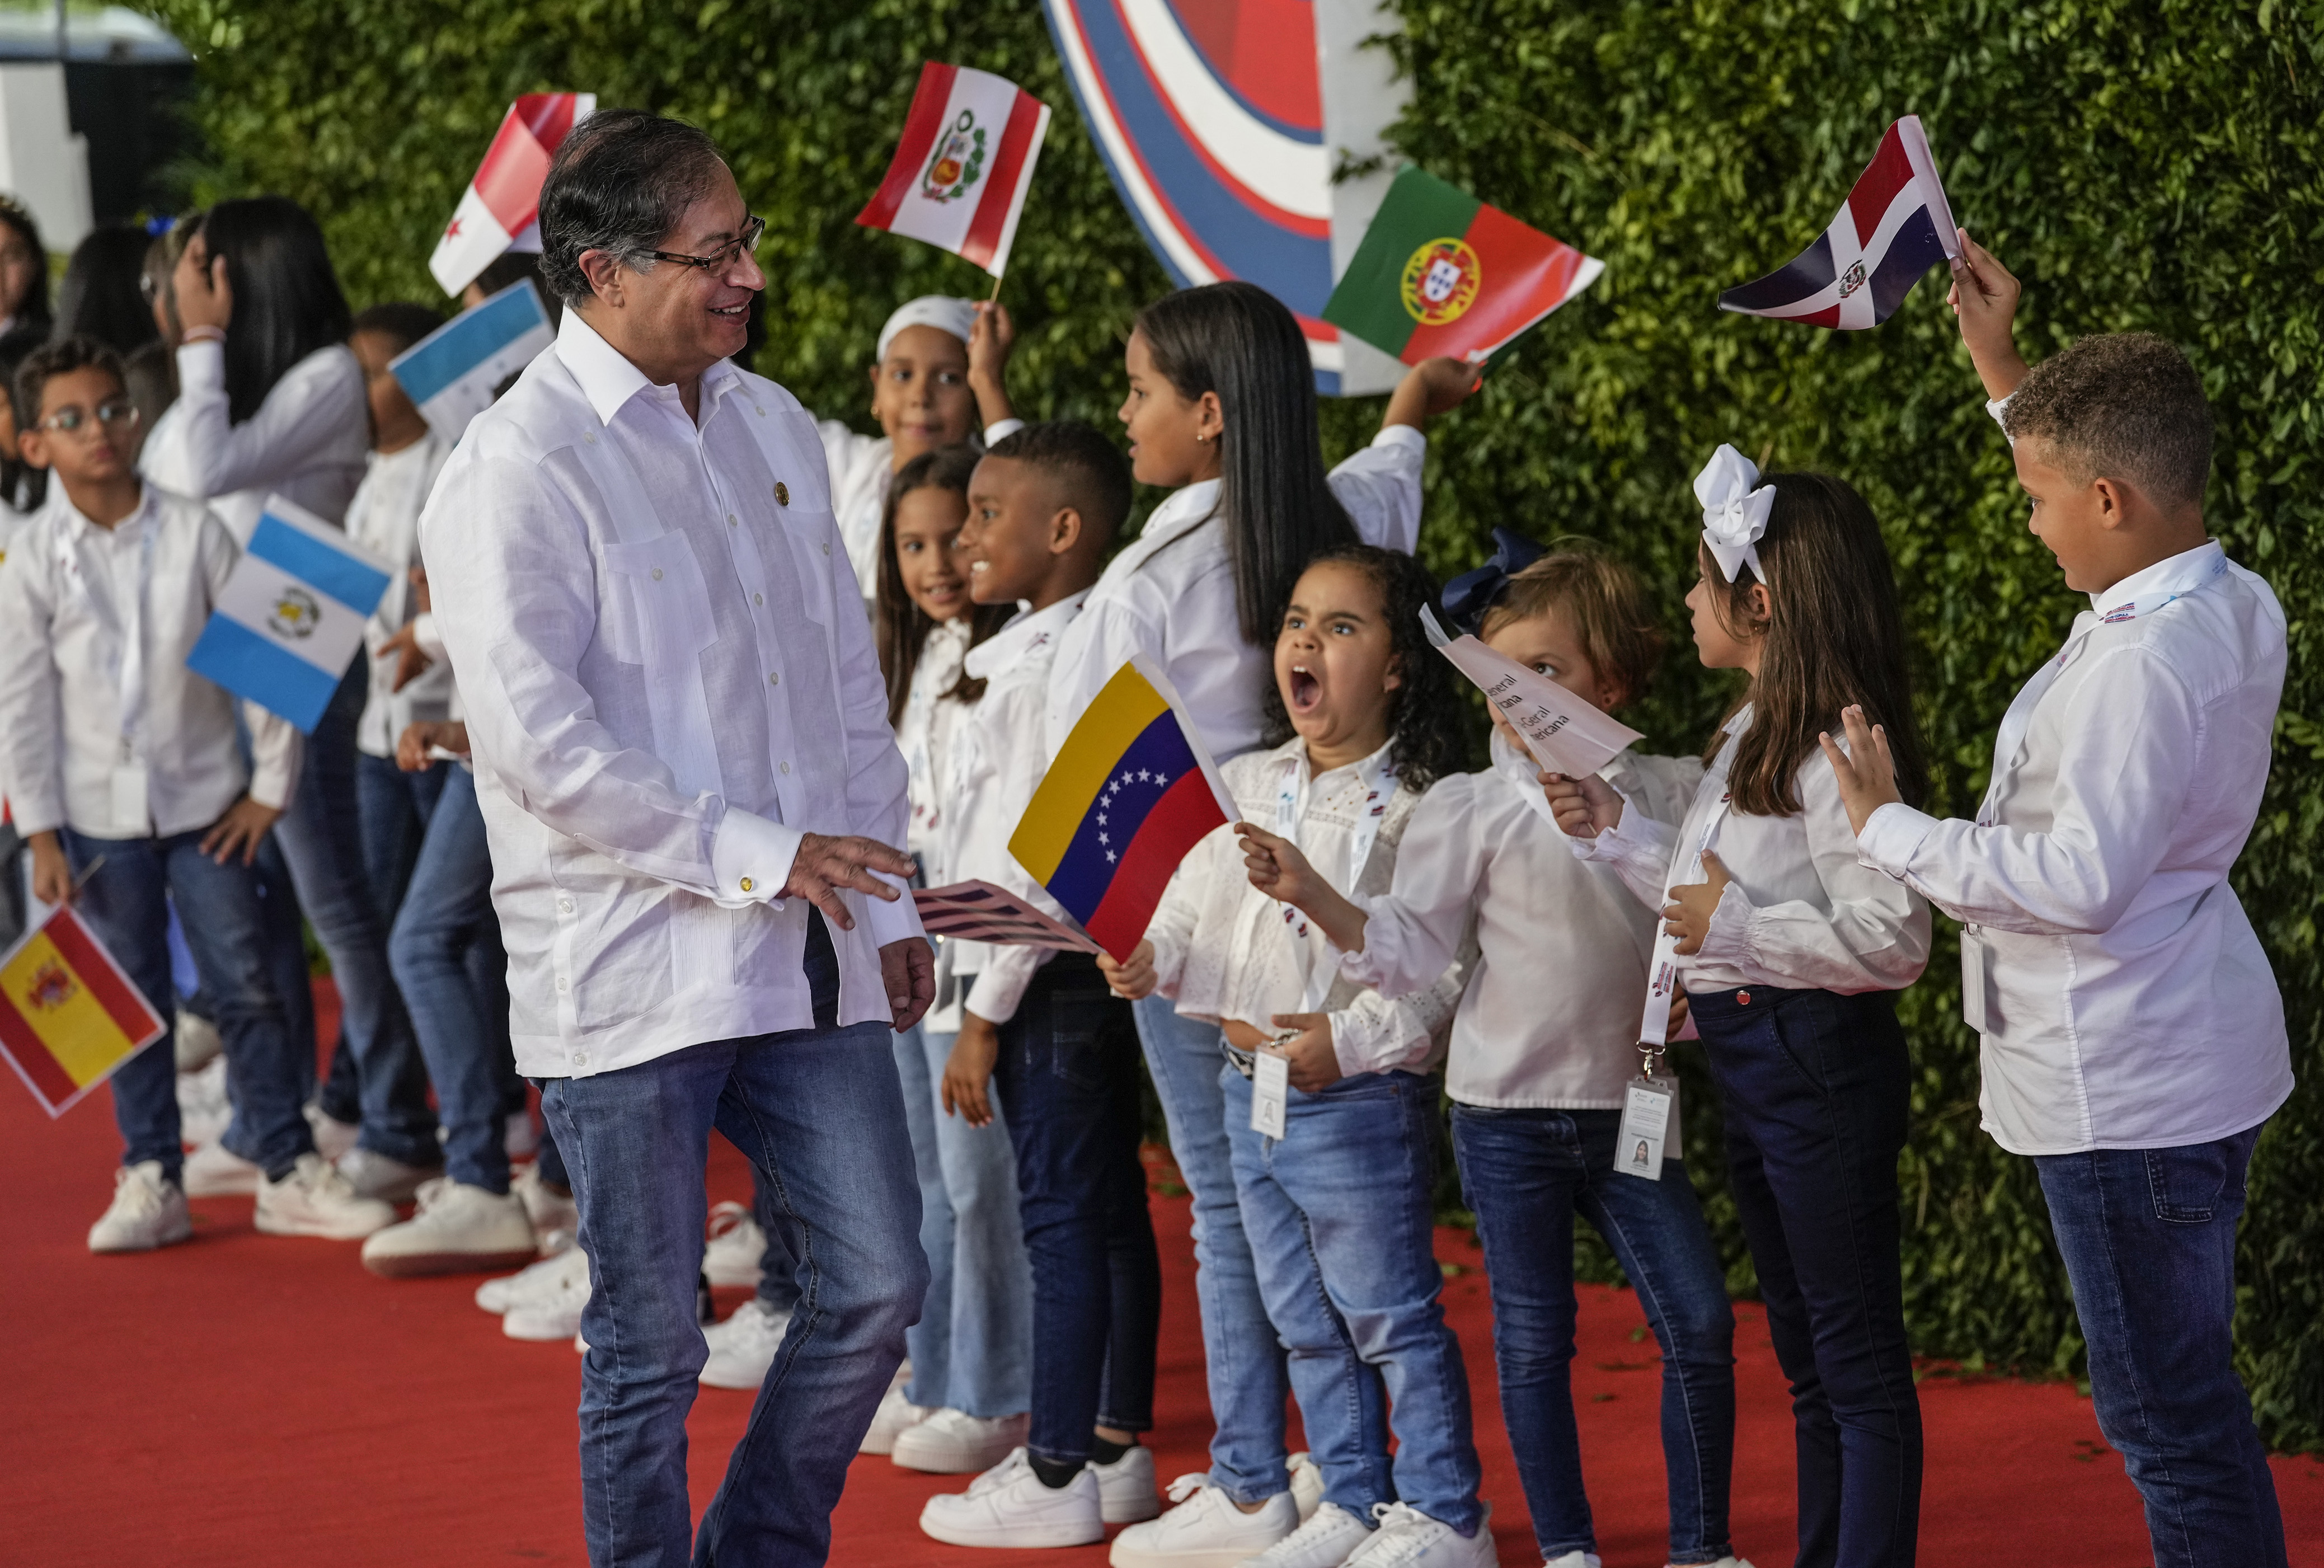 El presidente de Colombia, Gustavo Petro, saluda a los niños a su llegada a la sesión de la 28ª Cumbre Iberoamericana, en Santo Domingo, República Dominicana, el sábado 25 de marzo de 2022. (Foto AP/Ariana Cubillos)